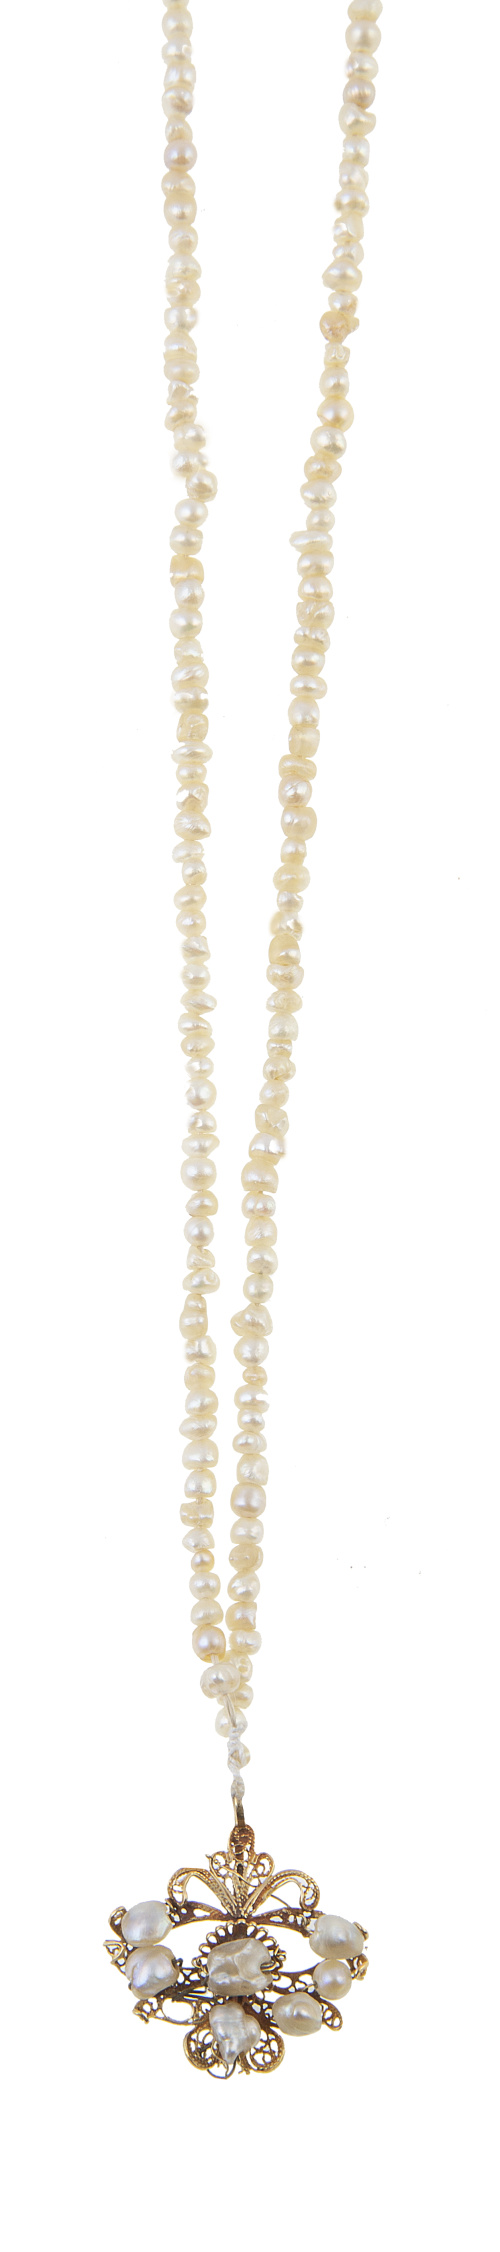 Conjunto de dos collares de niño de perlas de aljófar S. XV